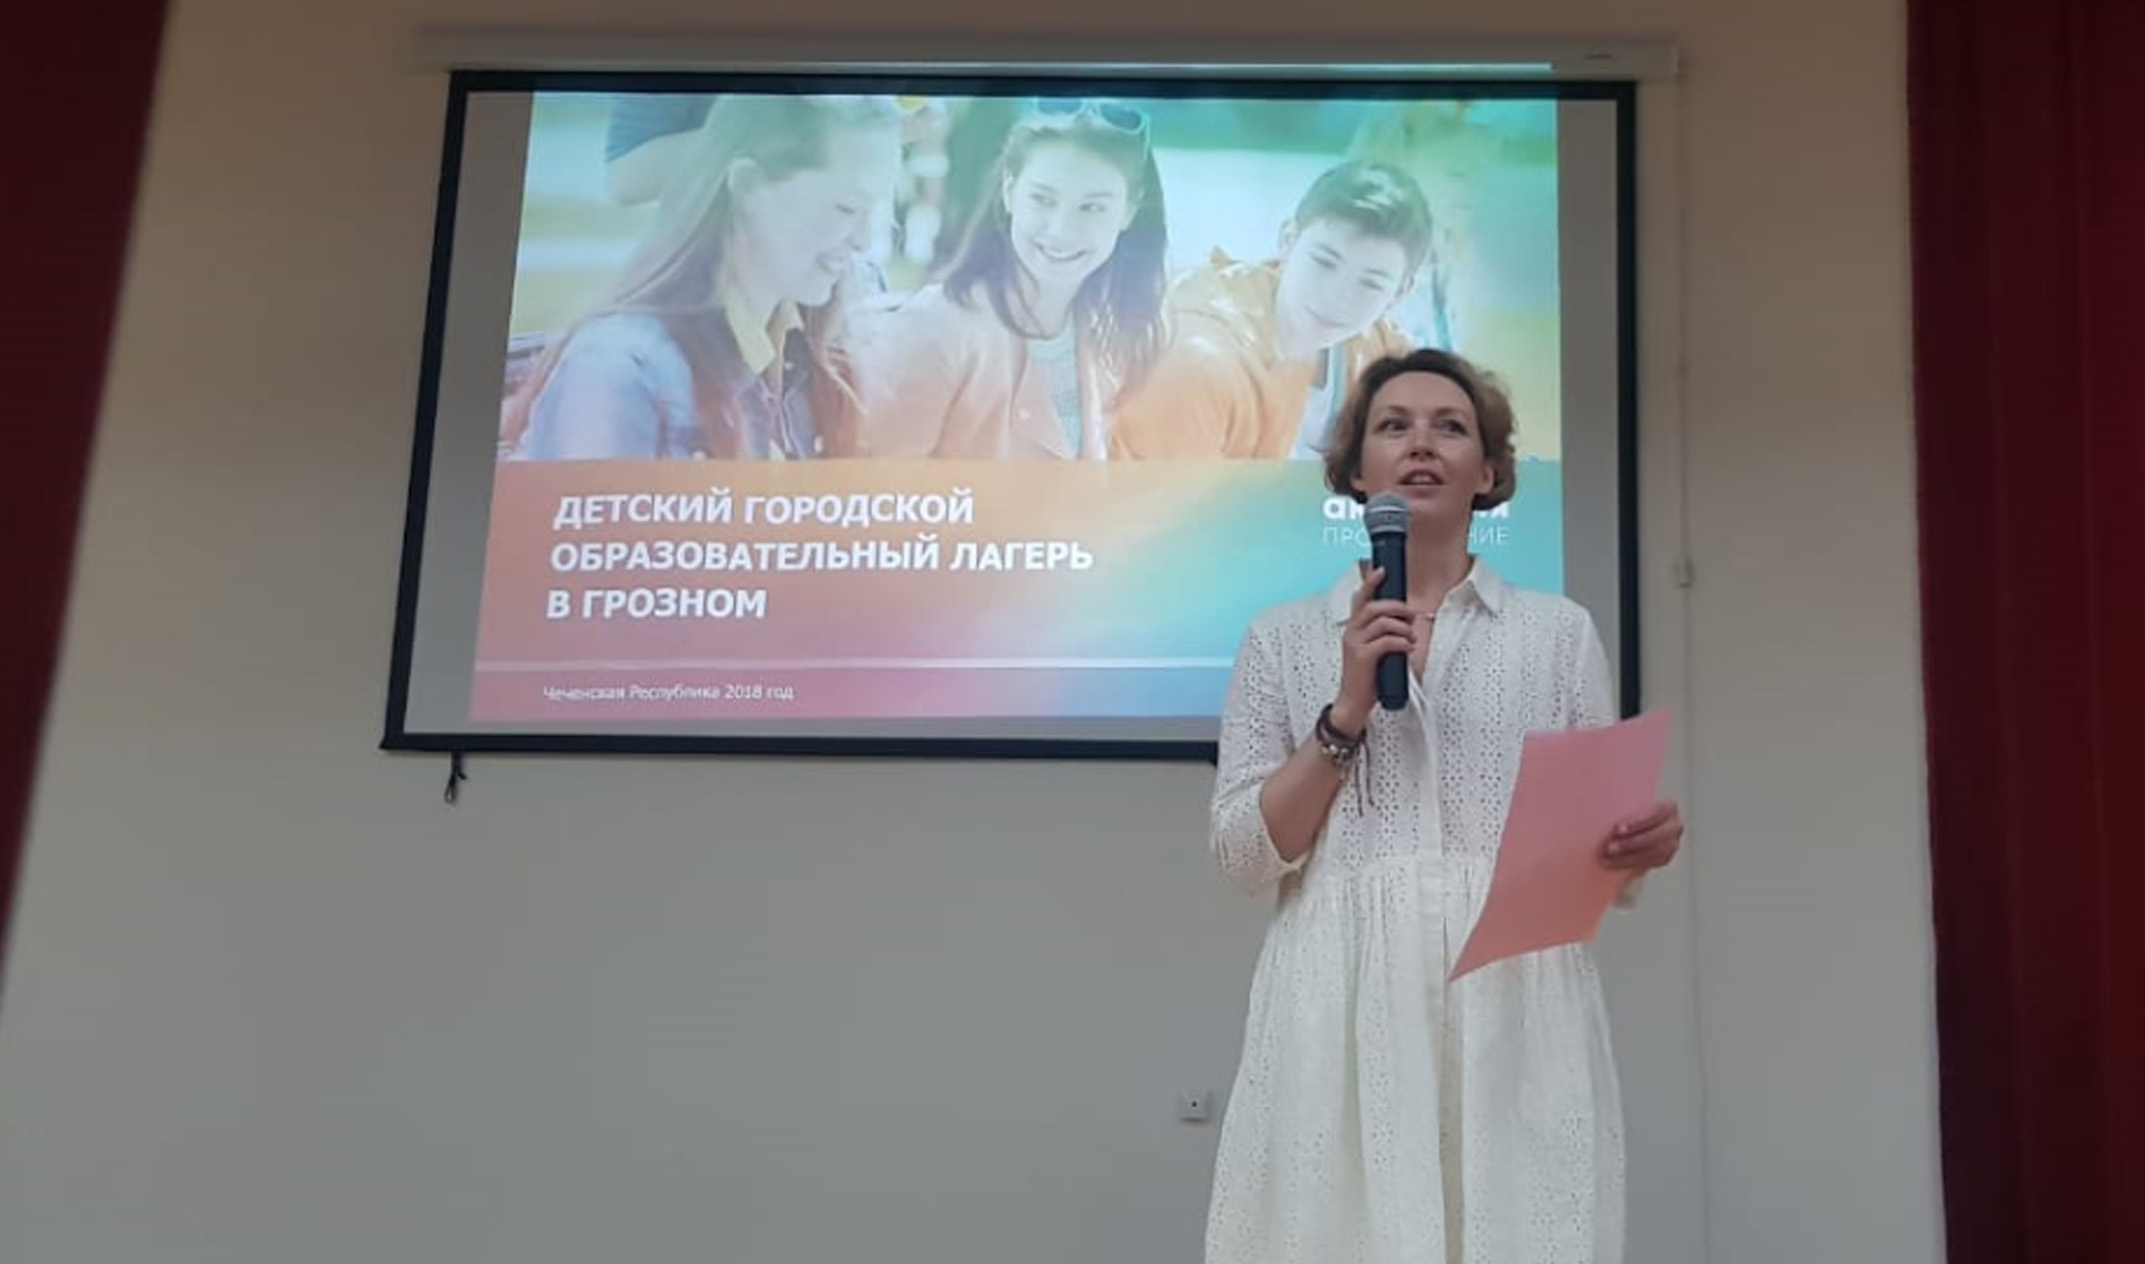 В Грозном состоялось торжественное открытие детского образовательного летнего лагеря